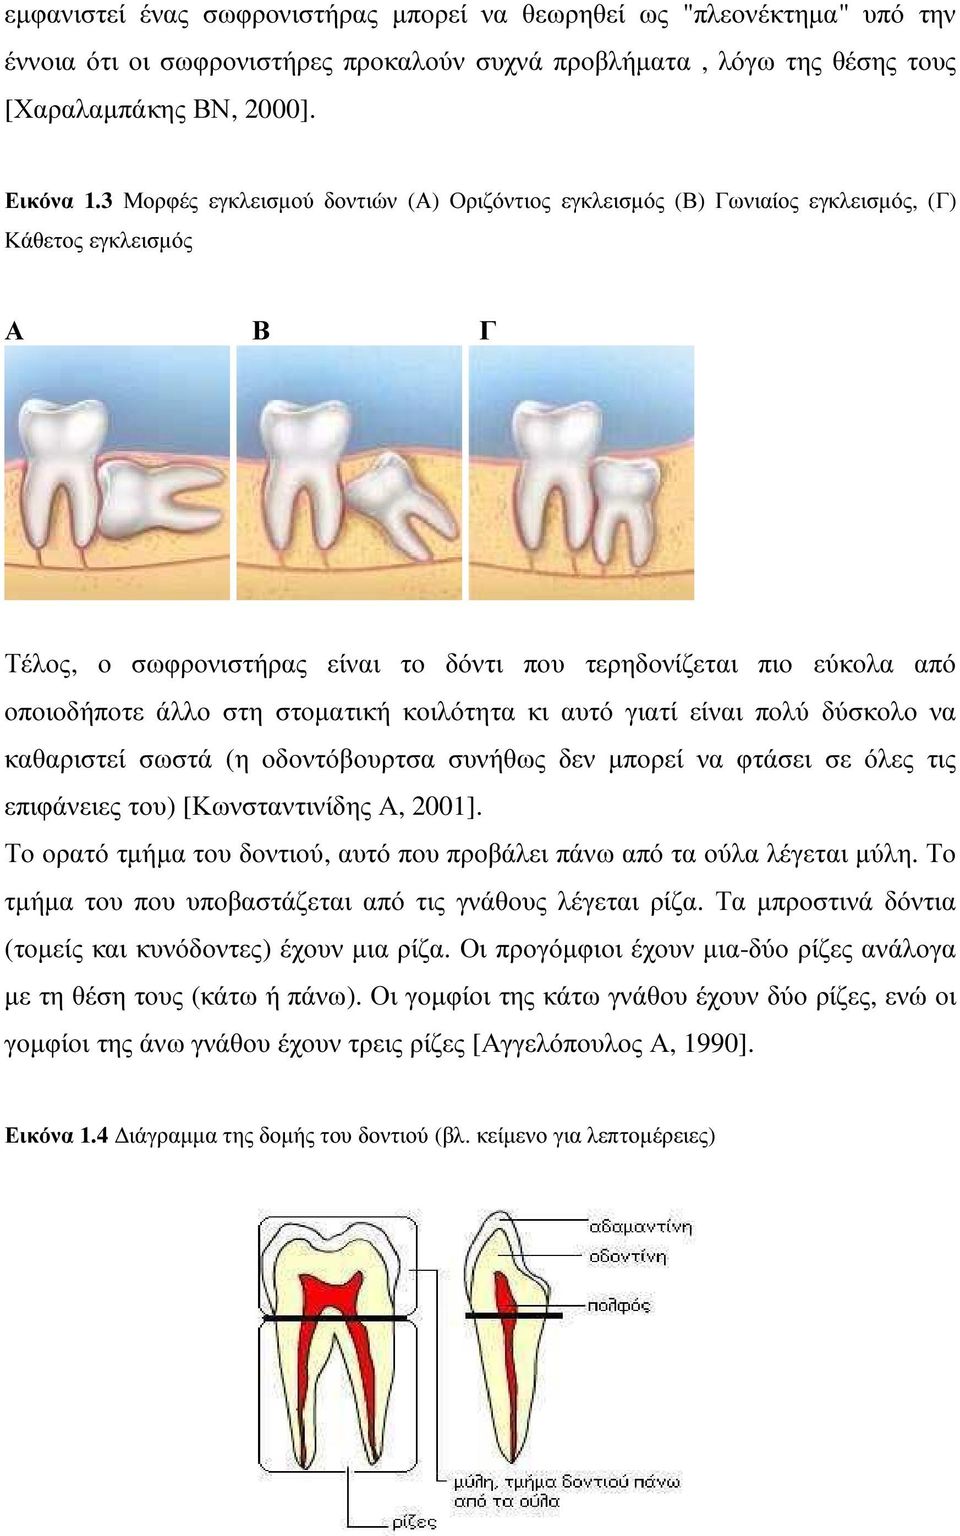 στοµατική κοιλότητα κι αυτό γιατί είναι πολύ δύσκολο να καθαριστεί σωστά (η οδοντόβουρτσα συνήθως δεν µπορεί να φτάσει σε όλες τις επιφάνειες του) [Κωνσταντινίδης Α, 2001].